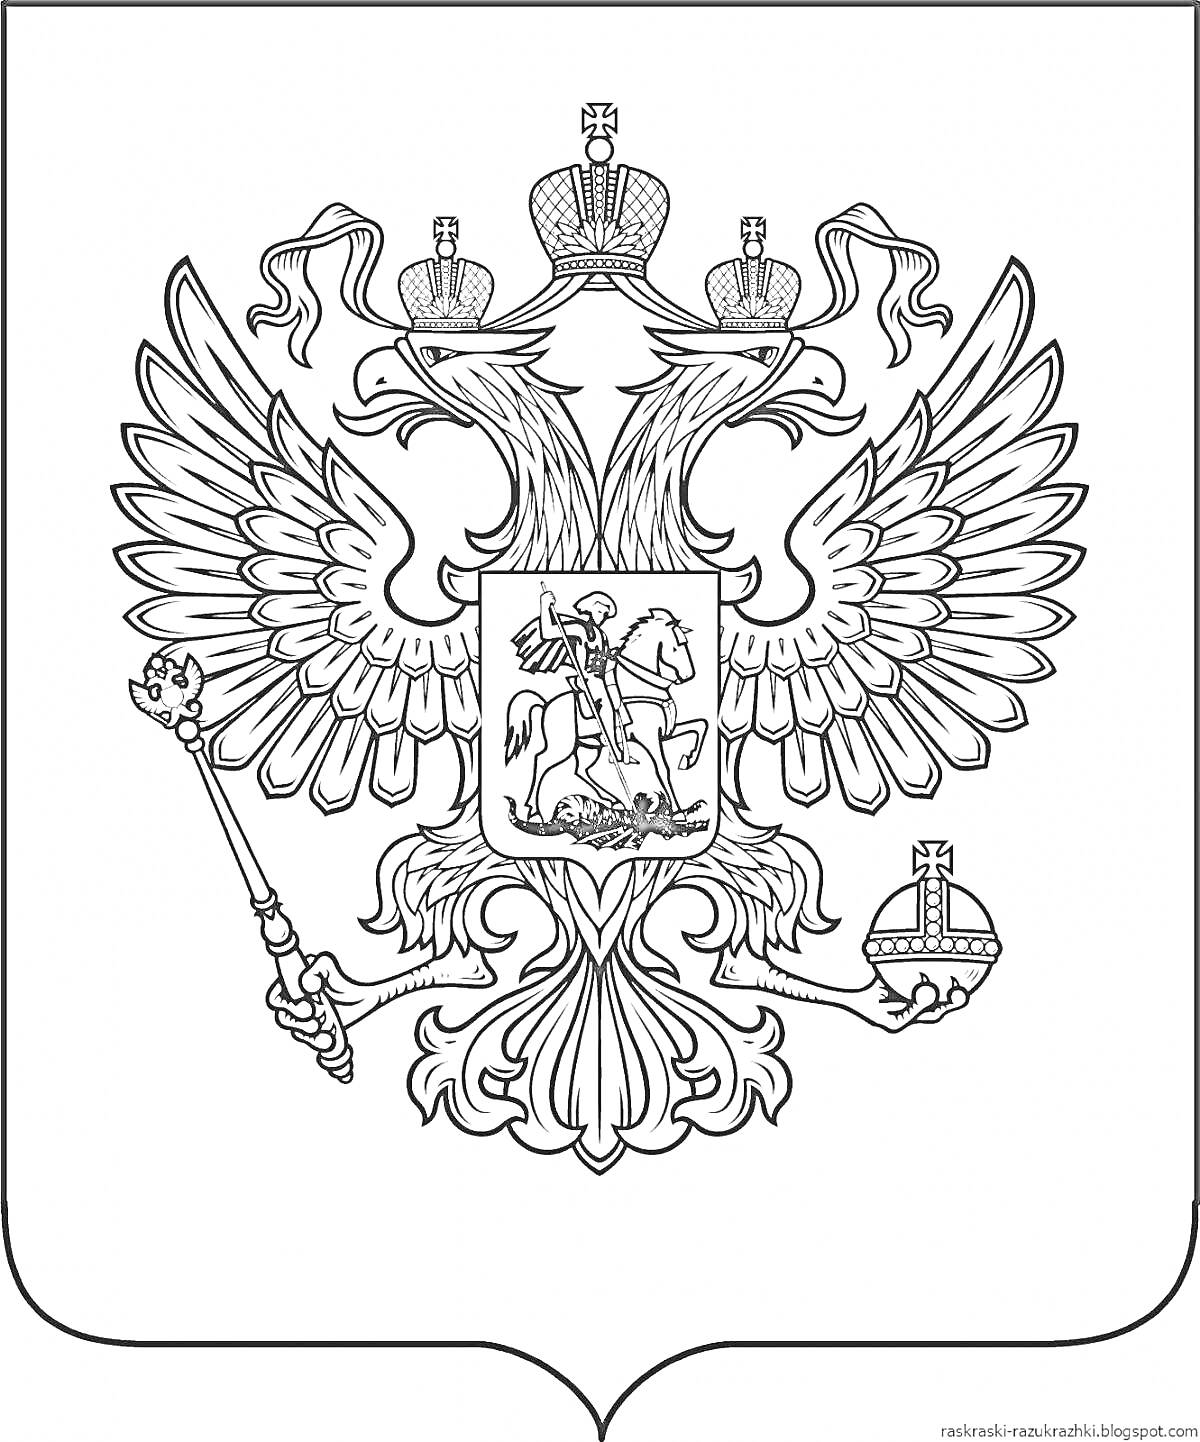 Герб России с изображением двуглавого орла; орел с тремя коронами, скипетром в правой лапе и державой в левой; на груди орла изображен Святой Георгий Победоносец, поражающий дракона